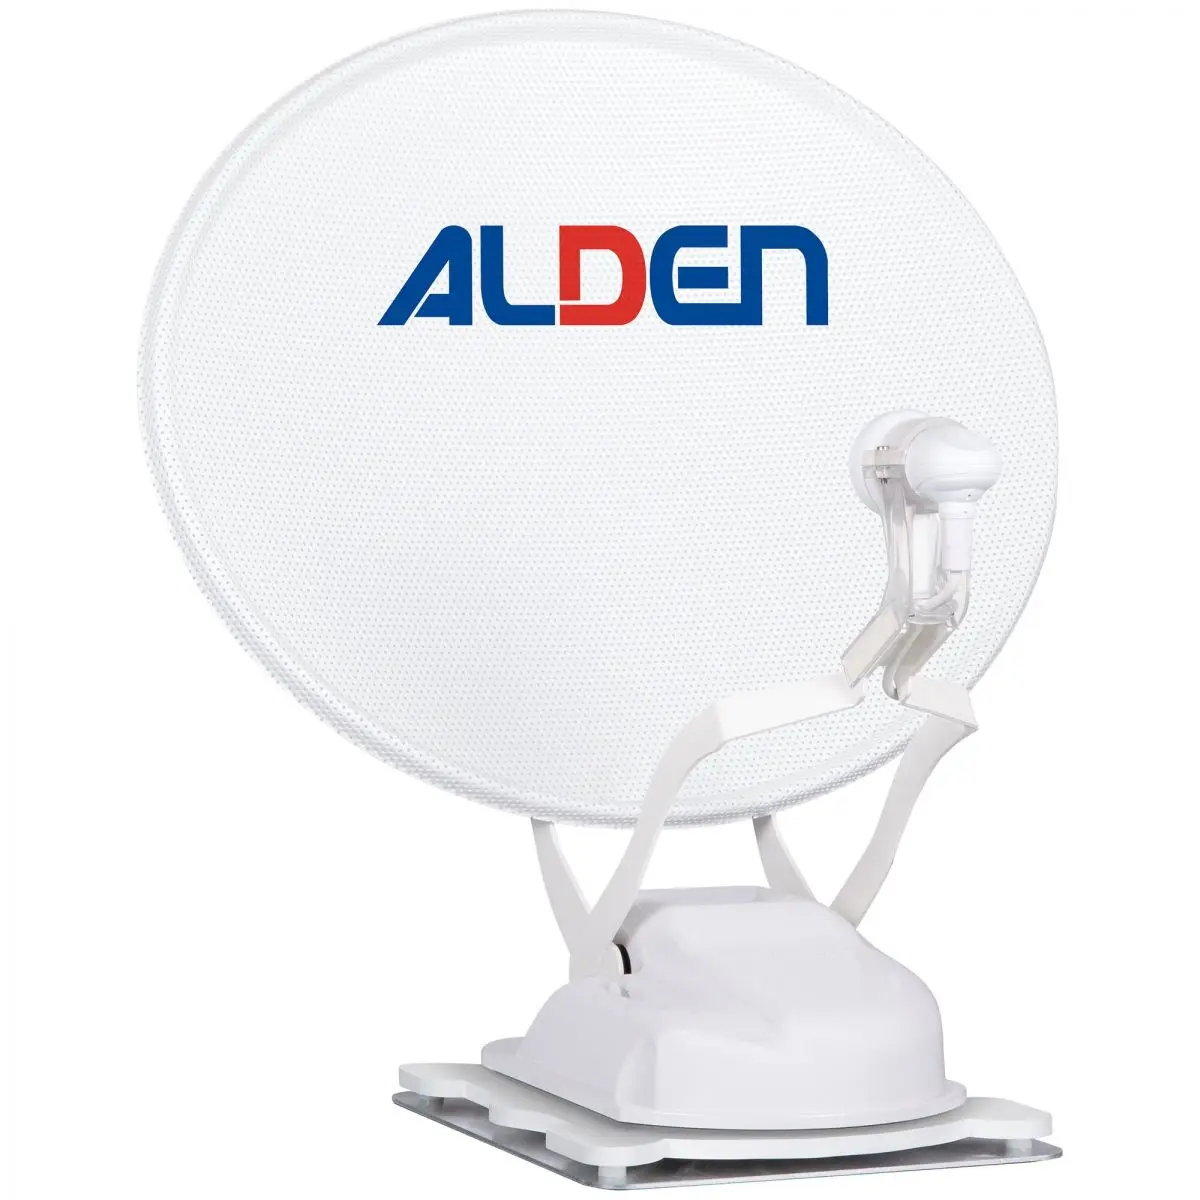 Sistem satelit Alden Onelight HD EVO 60 Ultrawhite care include modul de control SSC HD și TV Smartwide 19